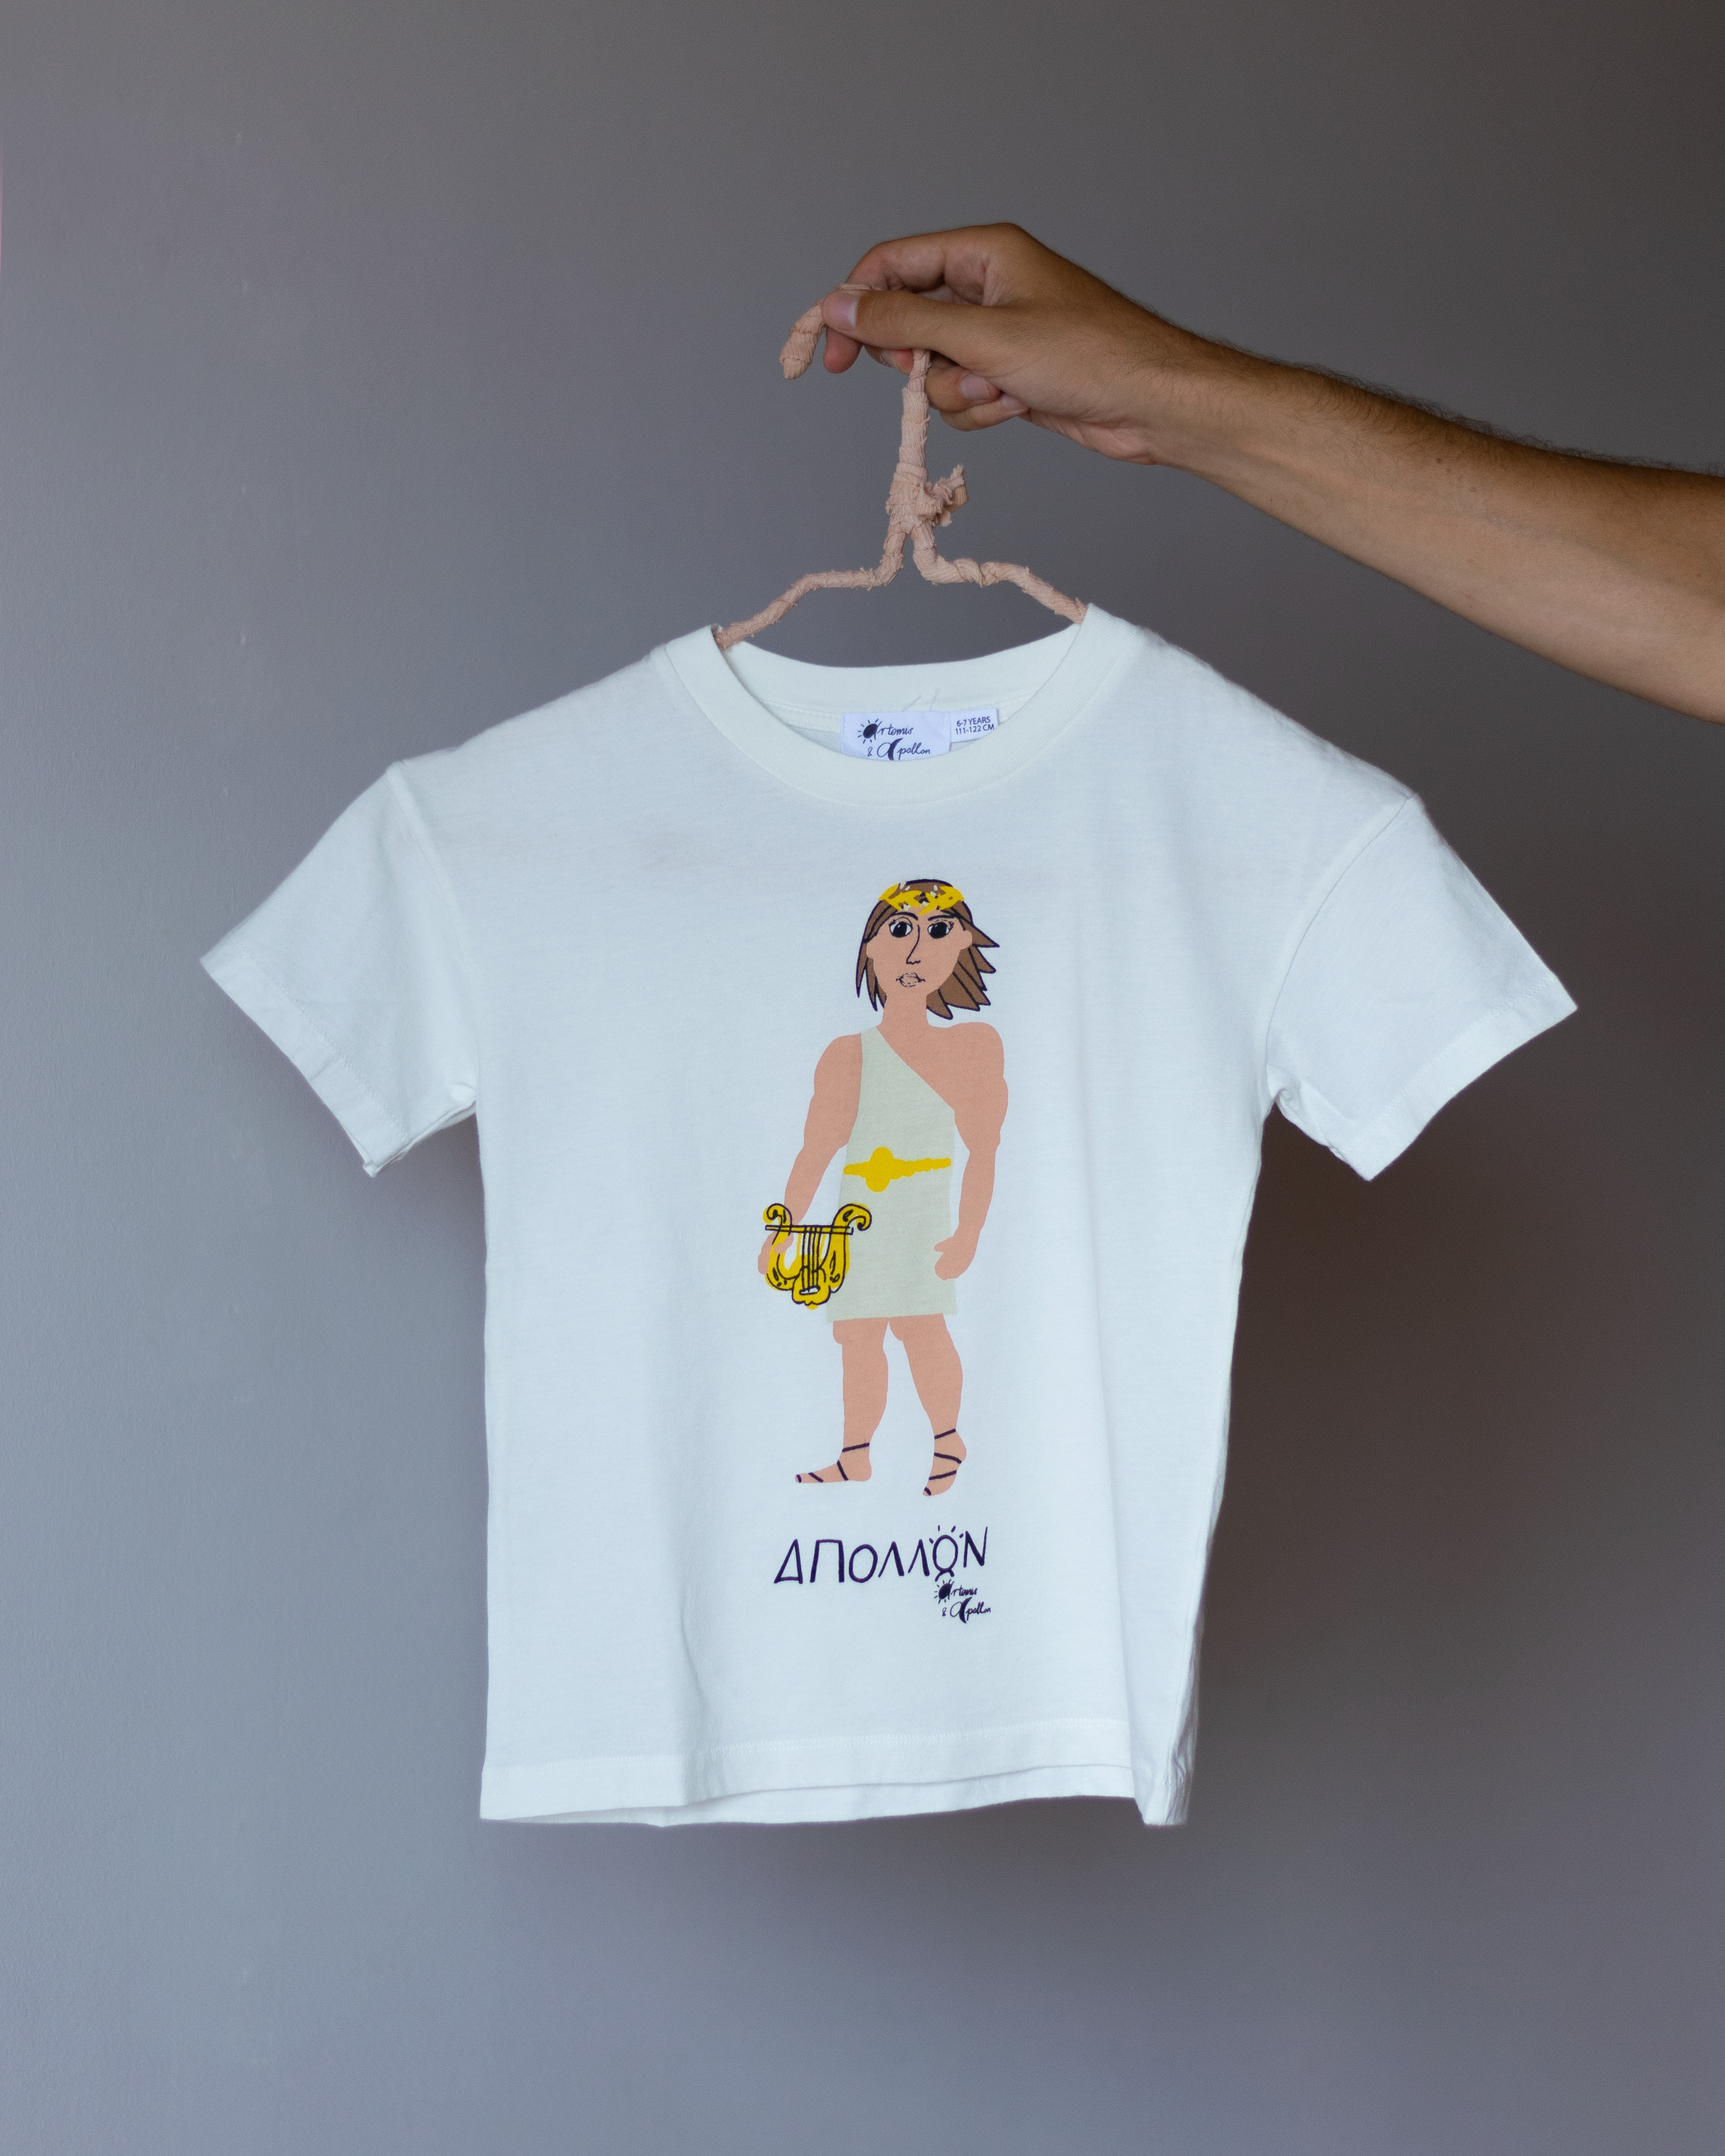 Apollon's T-Shirt